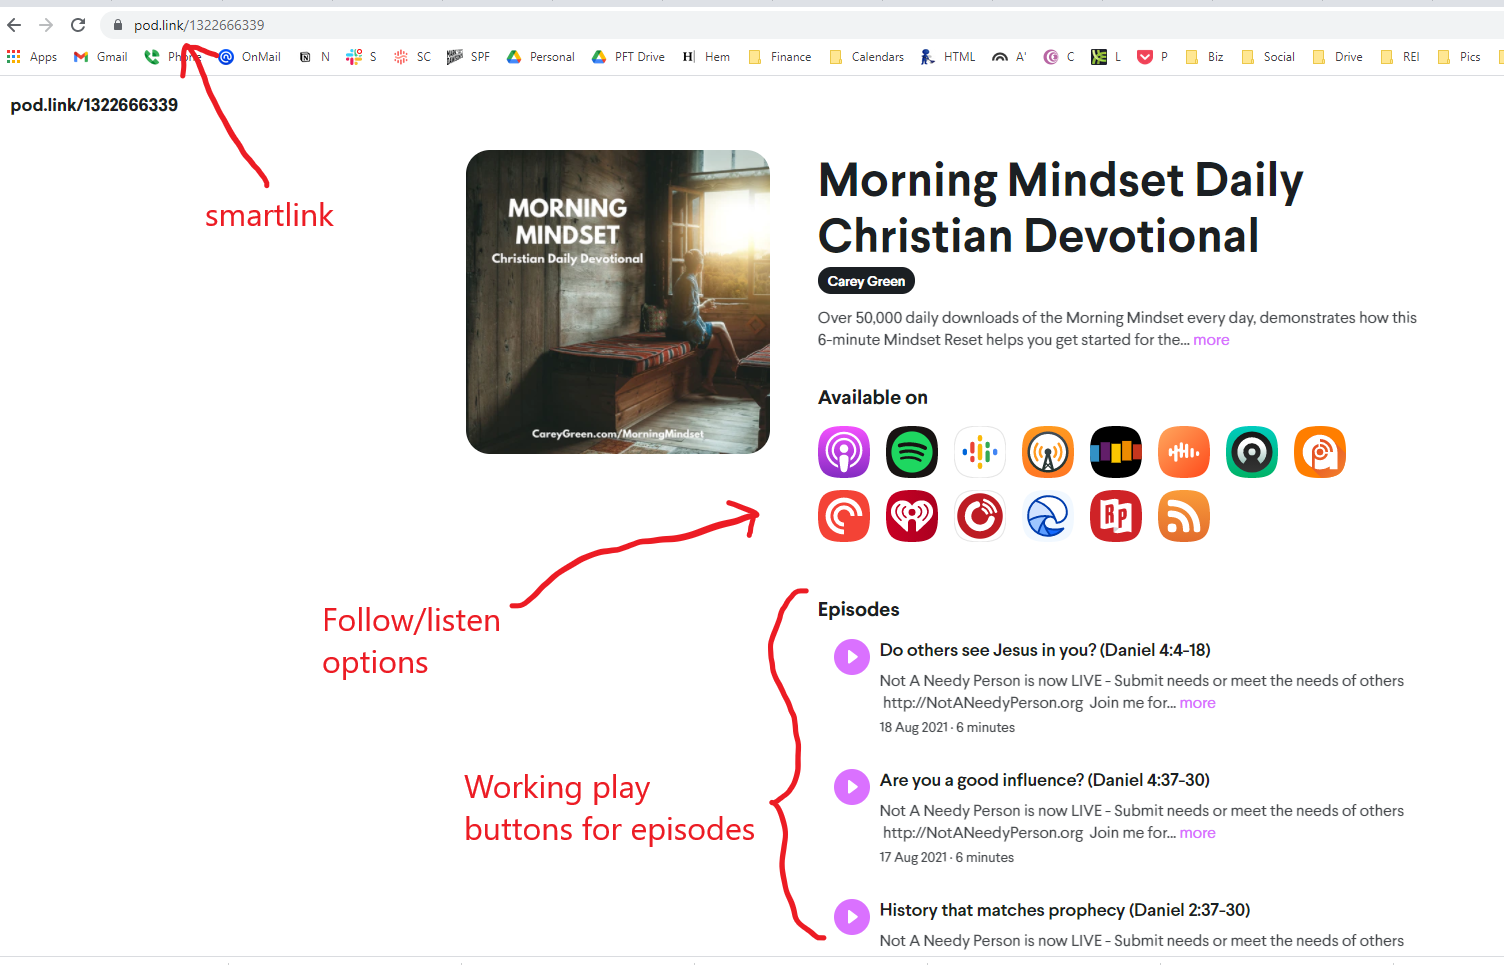 Podlink enables podcast promotion via smart links